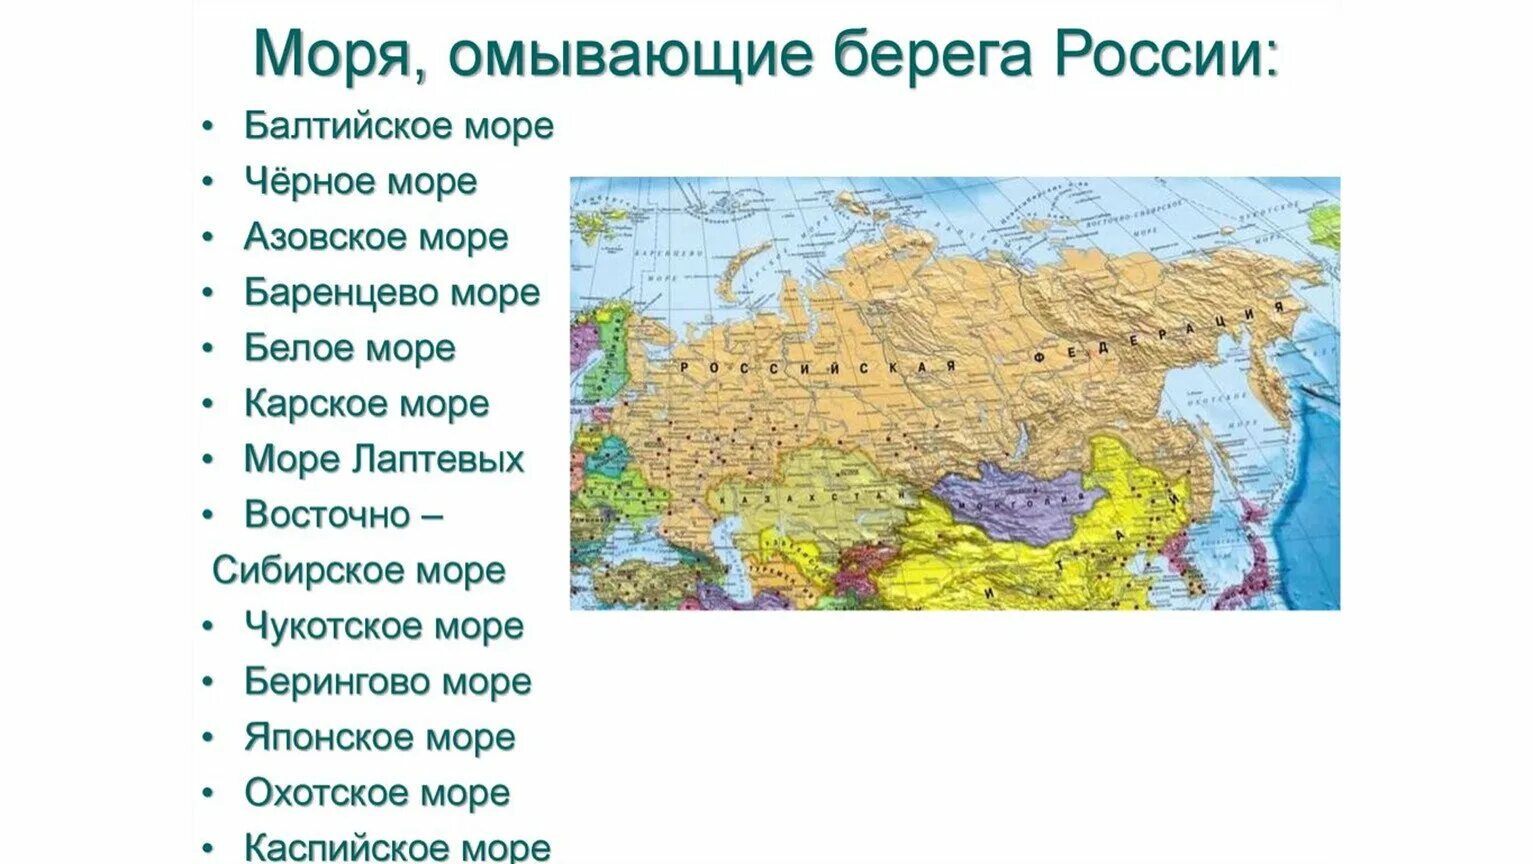 Количество морей в океанах. Сколько морей морей омывают Россию. Моря России список 12 морей. Моря омывающие границы России. Моря омывающииероссию.